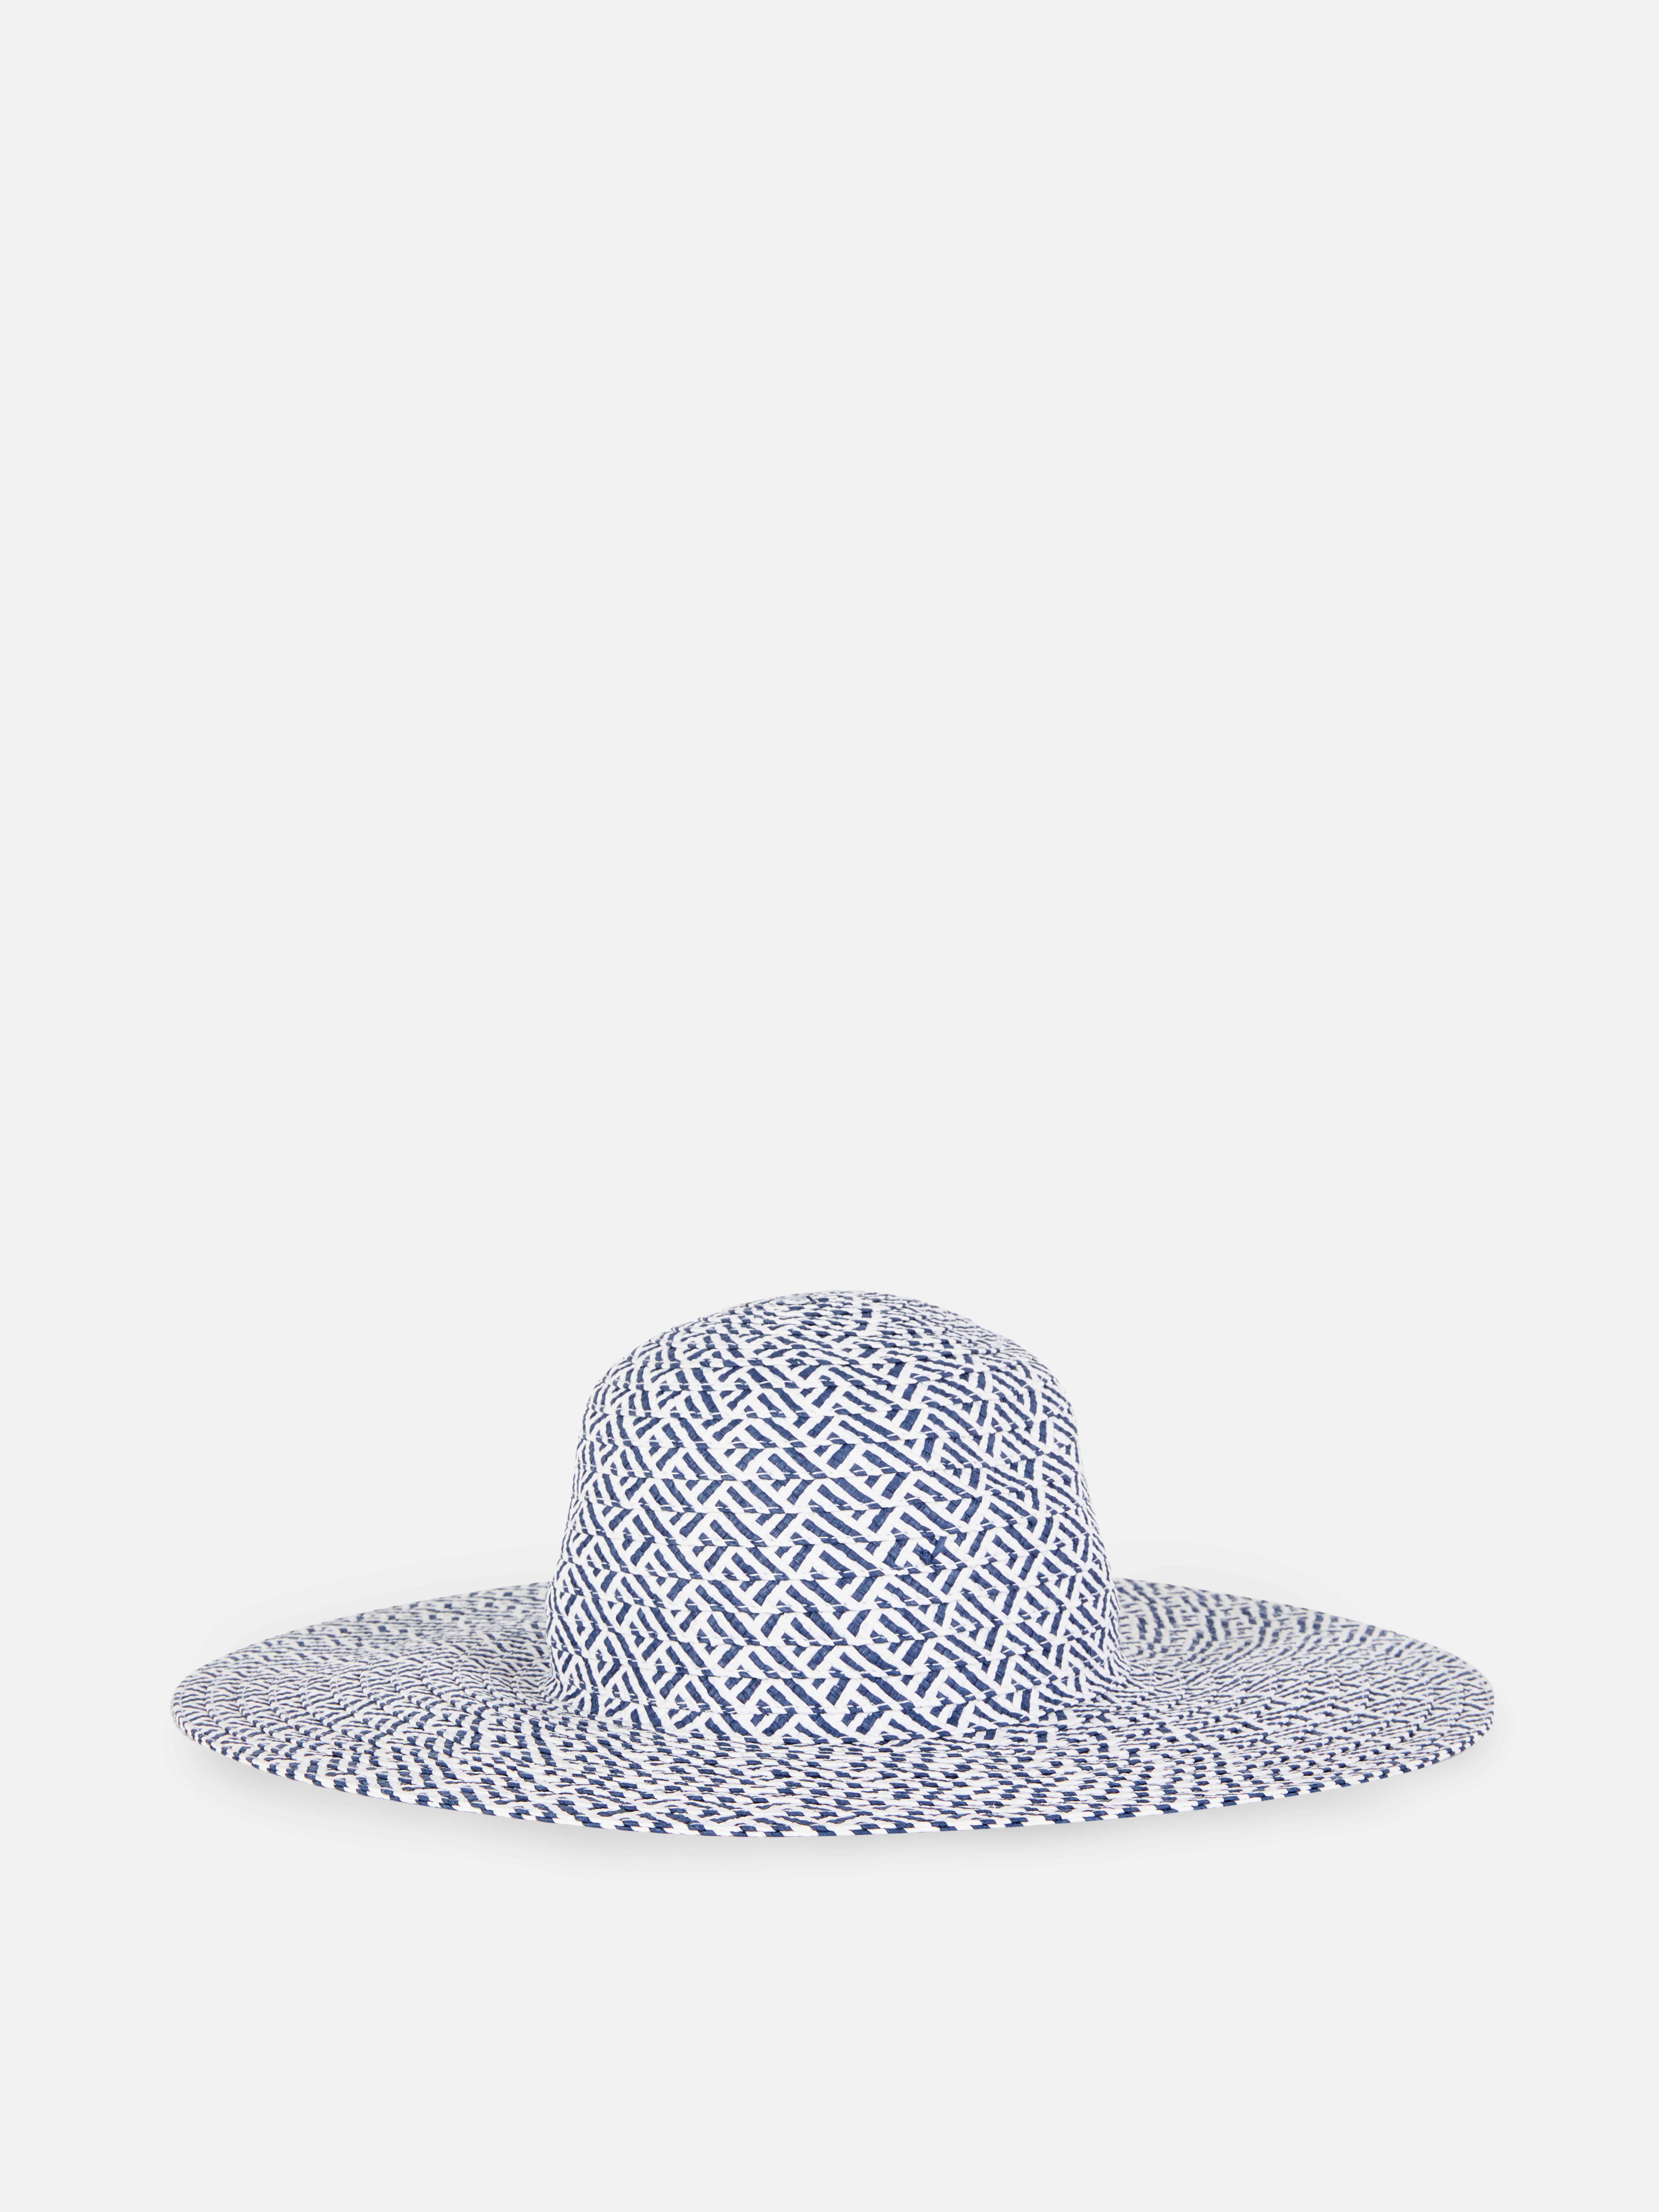 Dvoubarevný slaměný klobouk